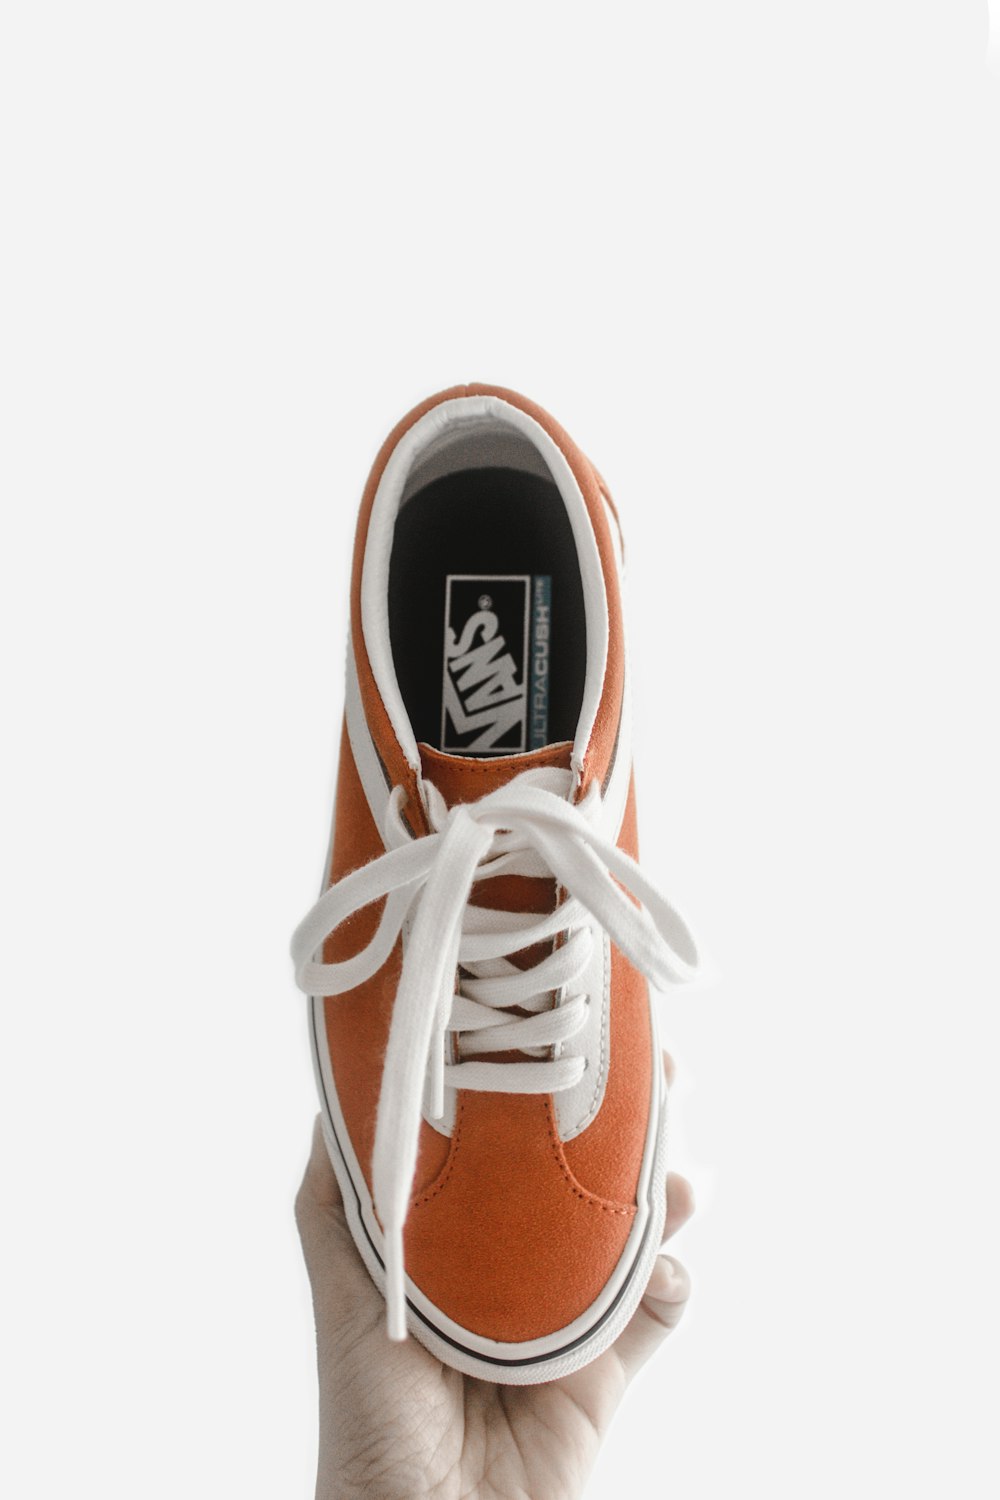 Zapatillas vans naranjas – Imagen Interior gratis en Unsplash